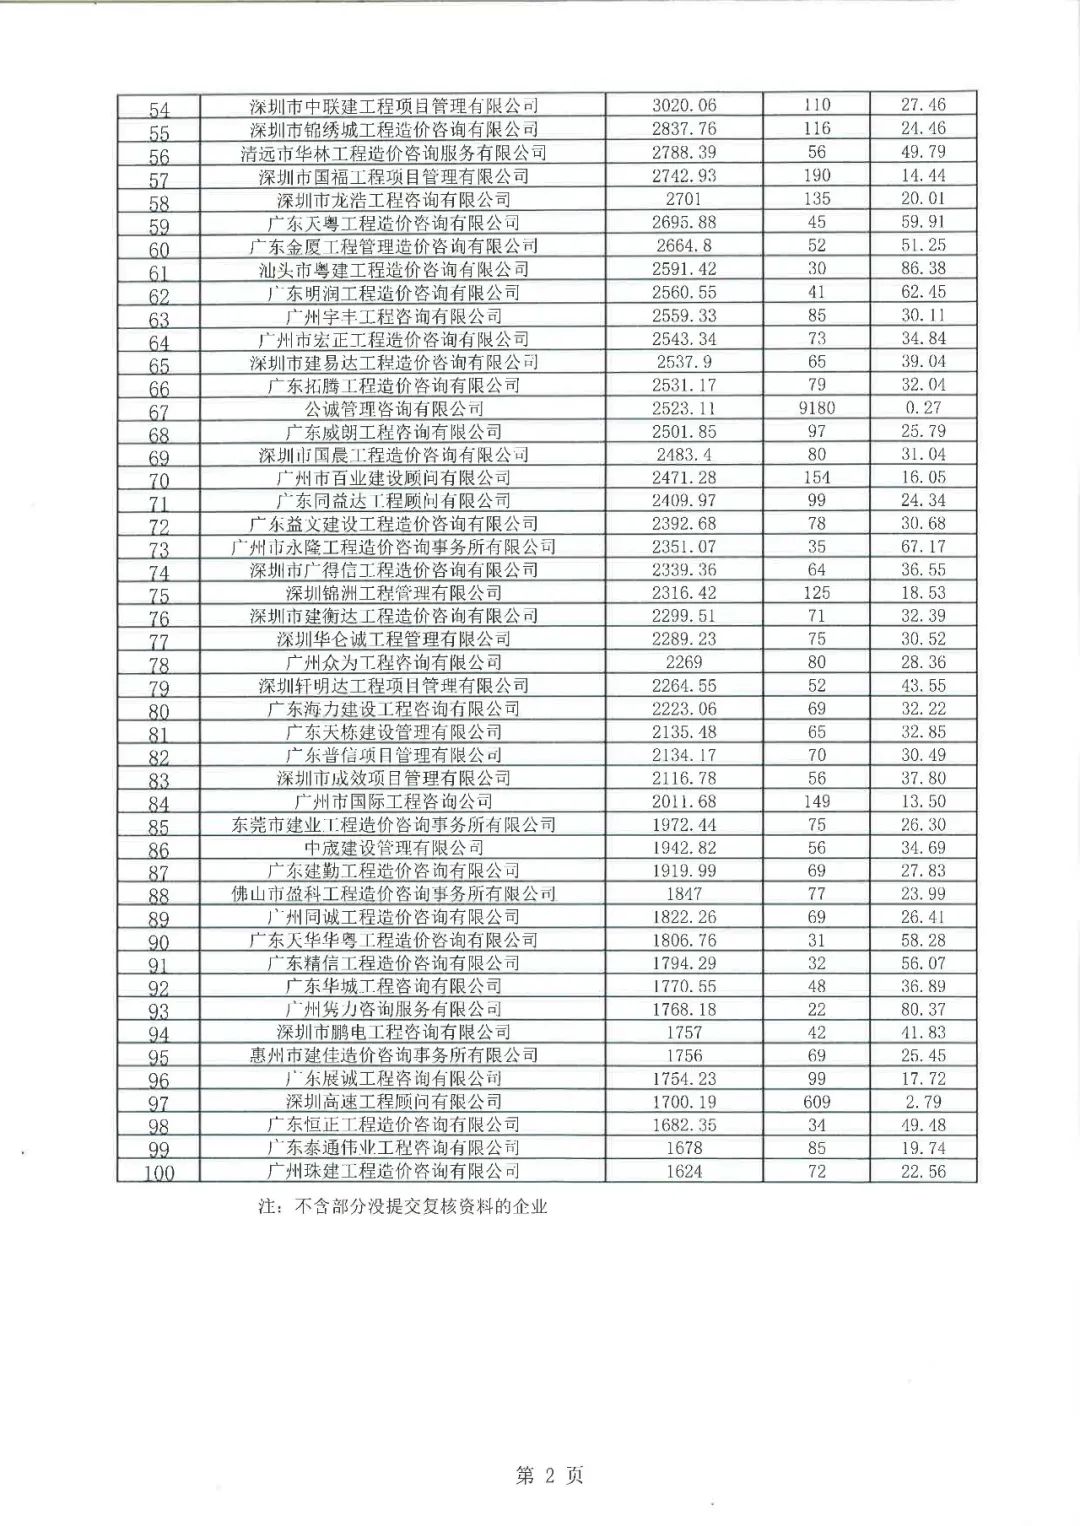 2019年广东省工程造价咨询企业营业收入百名排序名单3.jpg